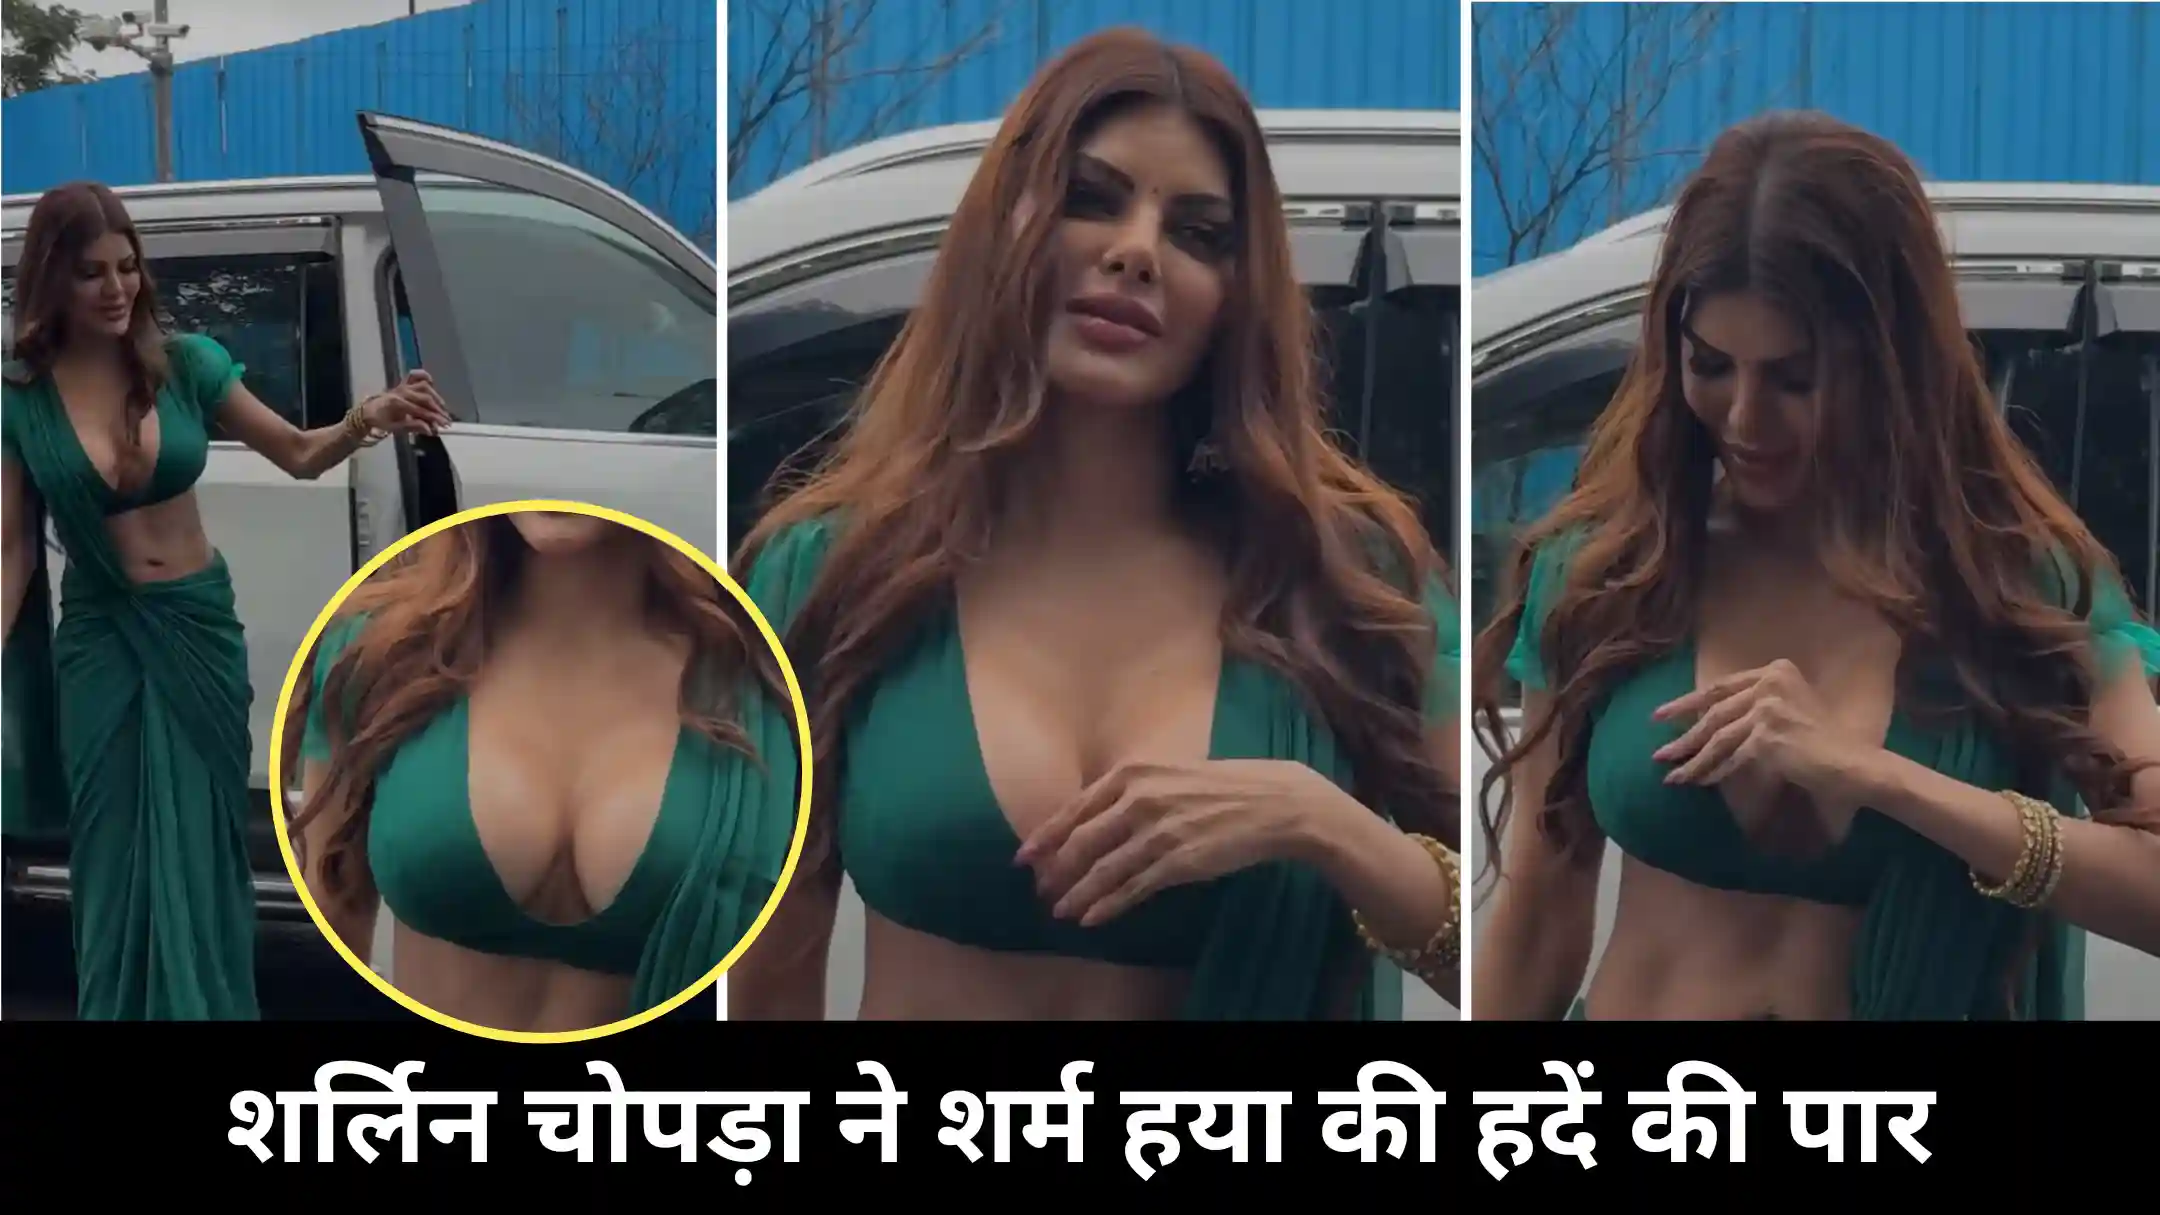 Sherlyn Chopra Hot Video: शर्लिन चोपड़ा की बोल्ड वीडियो हुई सोशल मीडिया पर वायरल